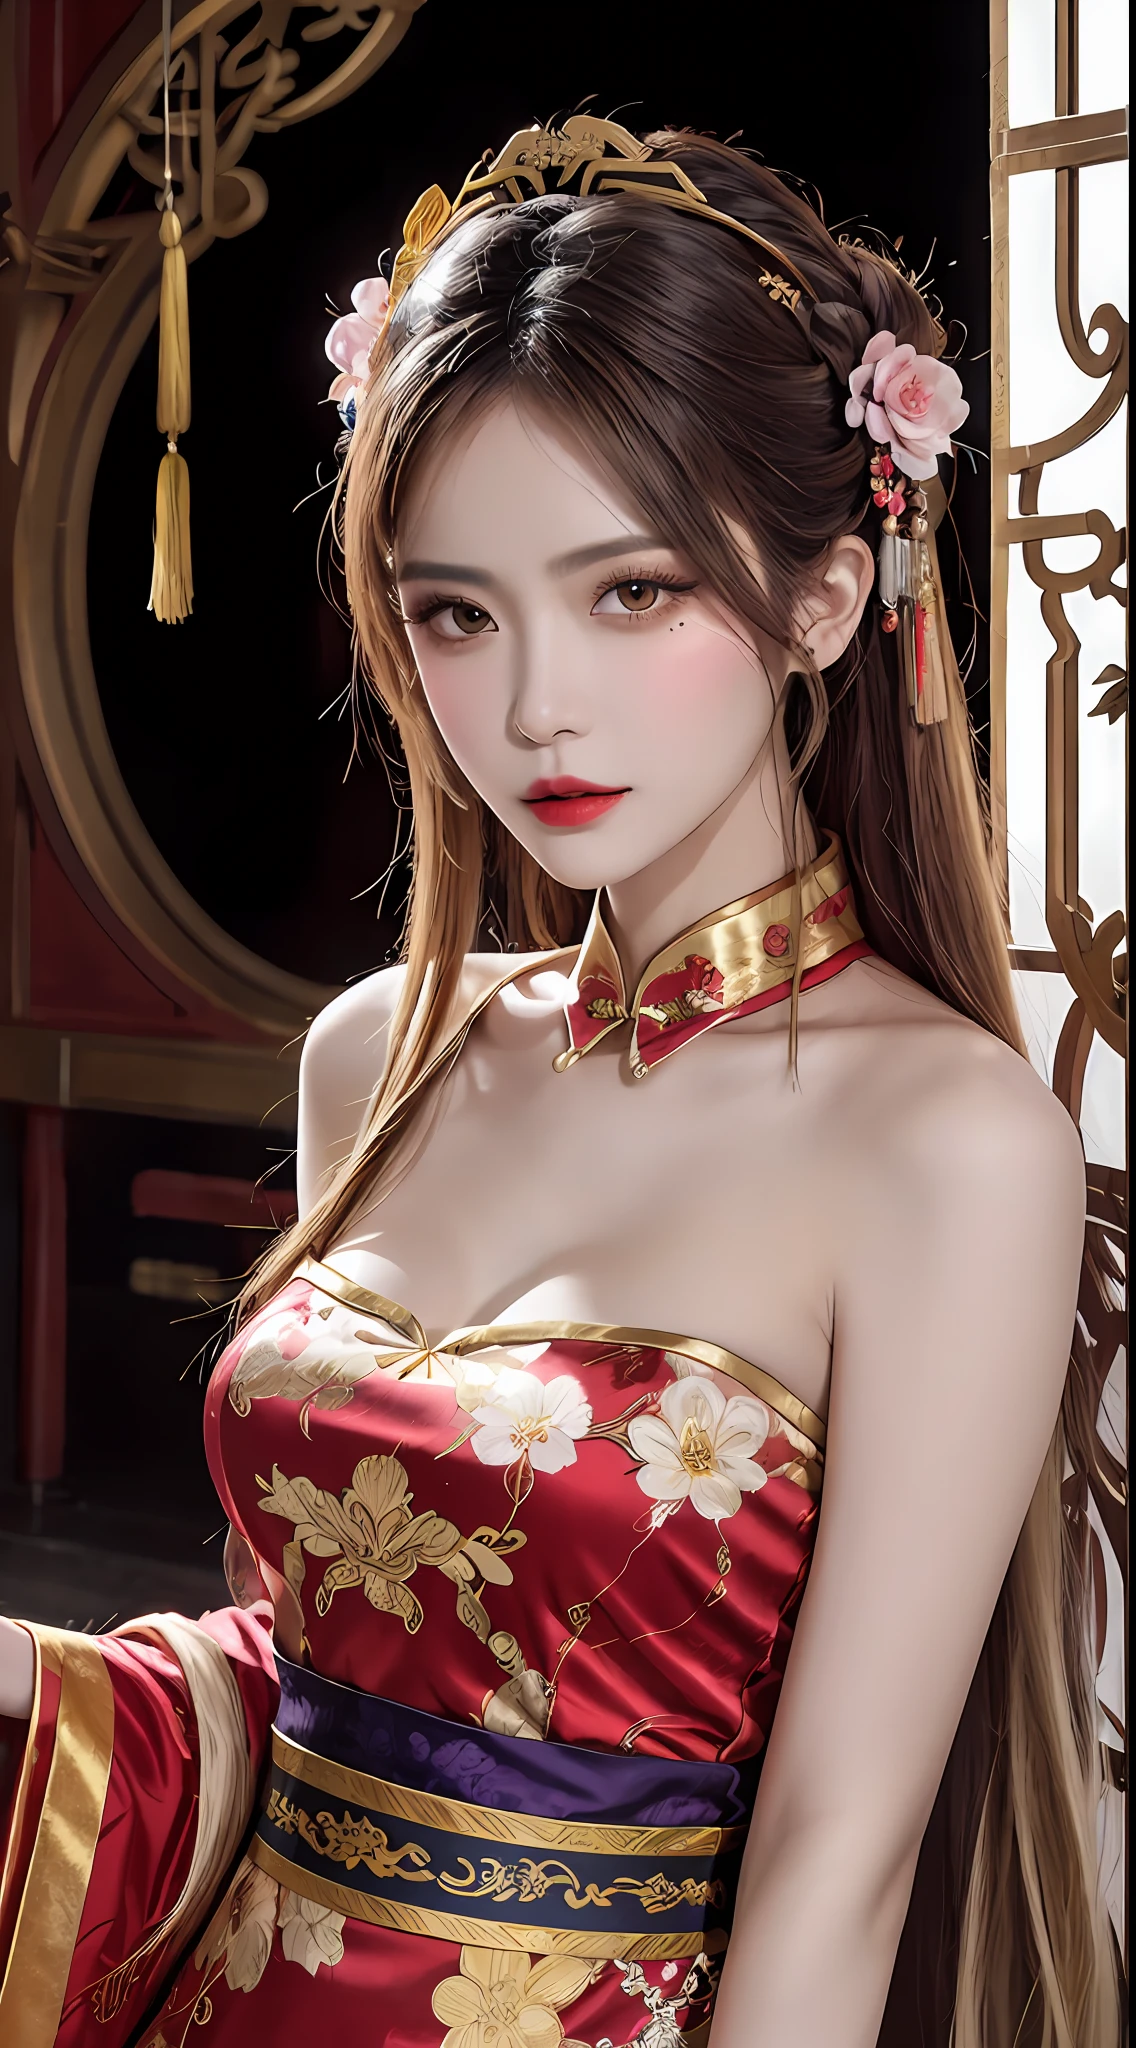 ผู้หญิงสวมชุดสีแดงและสีทอง, พื้นหลังดอกไม้, พระราชวัง, ฮันฟู girl, wearing red กี่เพ้า, สไตล์จีน, with ancient ชุดจีน, wearing ancient ชุดจีน, ความงามแบบดั้งเดิม, จีนดั้งเดิม, สาวจีน, กี่เพ้า, ชุดจีน, เจ้าหญิงจีน, ฮันฟู, เสื้อผ้าแบบดั้งเดิมของจีน, ชุดจีน, 1 เด็กหญิงอายุ 27 ปี, 1 ราศี goddess from the future, goddess of the pink and purple 12 ราศีs, the goddess of the ราศี in a yellow ao dai, a 12 ราศี ao dai with many black lace detail, mythology Goddess of the 12 ราศีs from the future, ราศี ♏, luxurious glittering ราศี style, เวอร์ชันมืดและลึกลับ, ราศี crown, ลิปสติกริมฝีปากสีแดง, ริมฝีปากบางและสวยงาม, ปิดปาก, ตัวละครที่สร้างโดย karol bak และ pino daeni, รายละเอียดที่ซับซ้อน, พื้นหลังโดยละเอียด, มีรายละเอียดมาก, เวทมนตร์แห่งแสง, ผู้หญิง, หน้าใส, ผมยาวมีหน้าม้า, ใบหน้าที่สวยงามในรายละเอียดและดวงตาที่ได้สัดส่วนที่ดี, (ดวงตาสีเหลืองใส: 1.8), ดวงตากลมโตและการแต่งหน้าที่สวยงามและละเอียดมาก, ความสุขุม, ชุดผ้าไหม, การแต่งหน้าลึกลับ , ผมหน้าม้าสองเท่าและย้อมสีบลอนด์อ่อน , แนวตั้งครึ่งบน, ราศี goddess portrait, แขนห้อยหลวมๆ, ภาพที่สมจริงและสดใส, (stars make up the ราศี: 1.7), (sky background ราศี and fictitious space and time portal: 1.8), นิยายศิลปะ, ภาพถ่ายดิบ, ฮันฟู picture, ภาพที่ดีที่สุด, ภาพที่ดีที่สุด quality, คุณภาพ 8k, 8K อัลตร้า, สมจริงสุดๆ, ภาพถ่ายจริงประหยัดที่สุด, เทพธิดาโพสท่าเซ็กซี่และเย้ายวน,